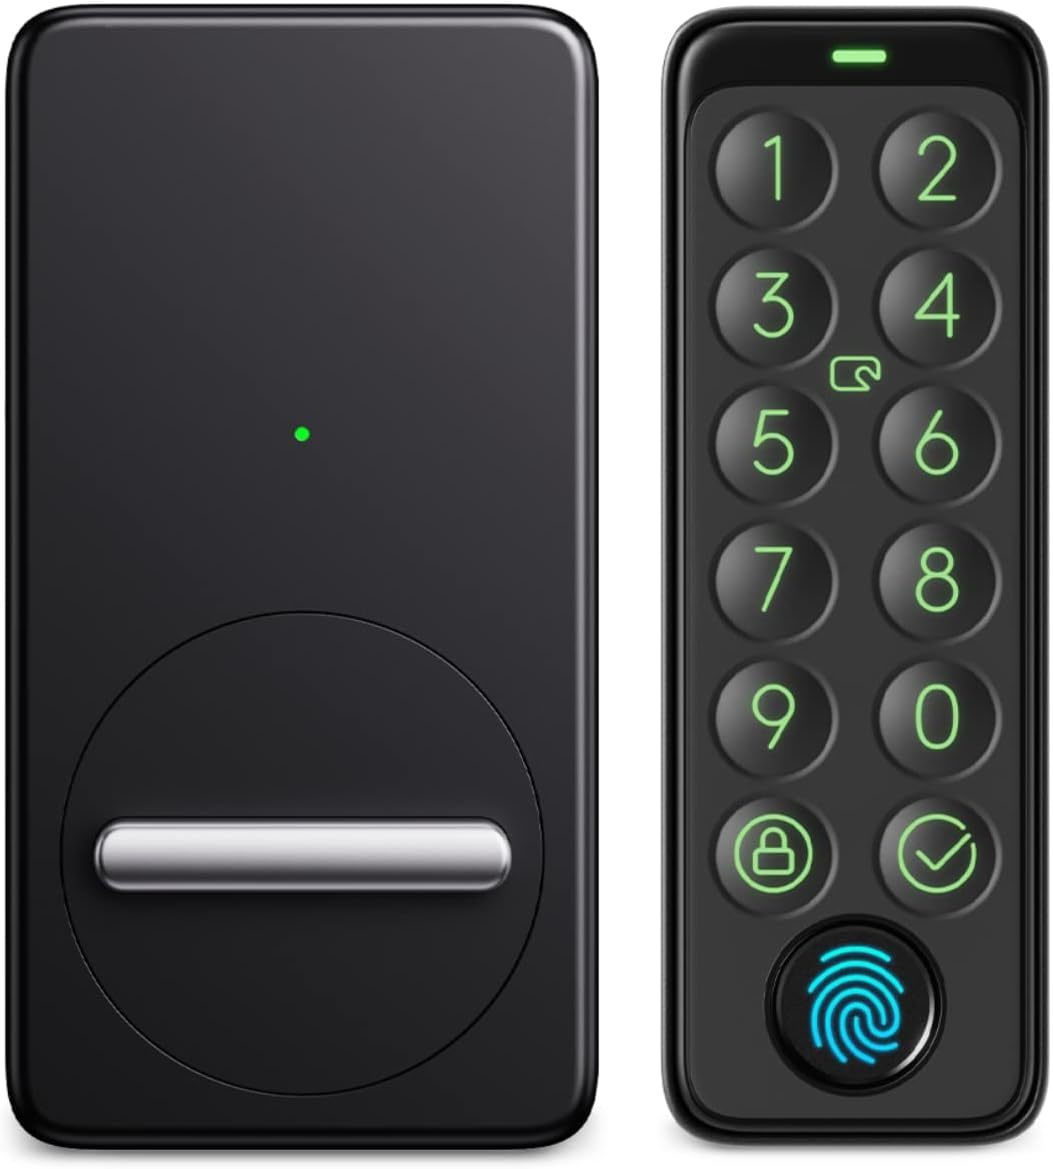 未使用 SwitchBot スマートロック 指紋認証パッド セット Alexa スマートホーム スイッチボット オートロック 暗証番号 W1601702の画像1